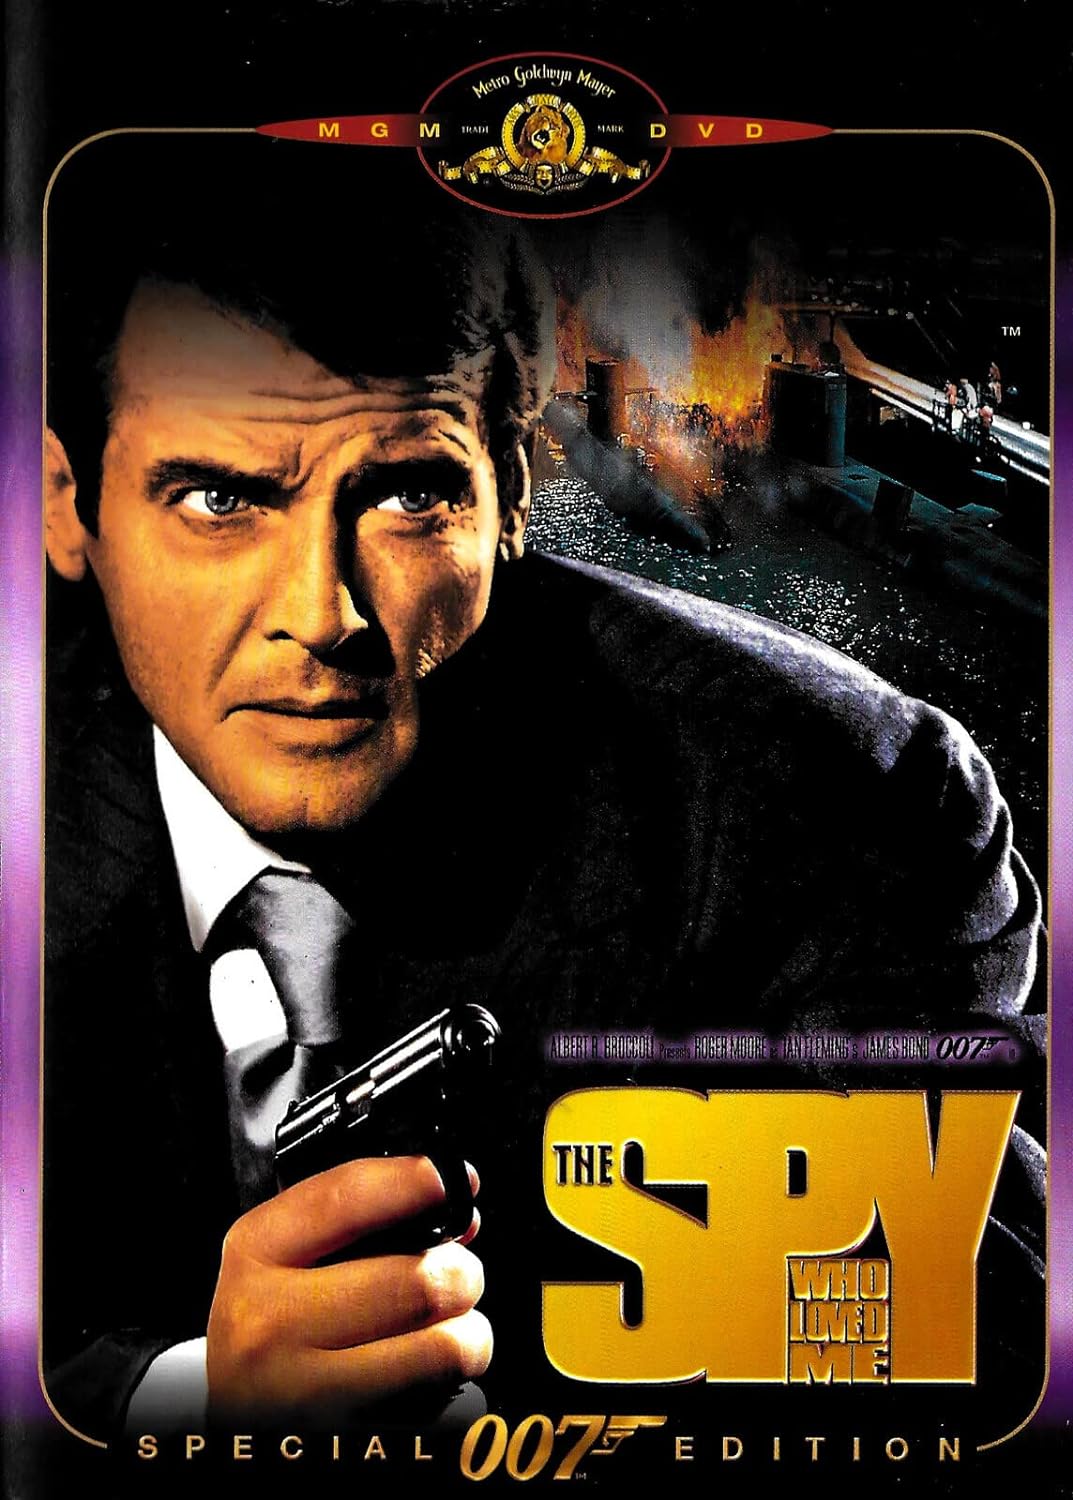 James Bond Films: The Spy Who Loved Me